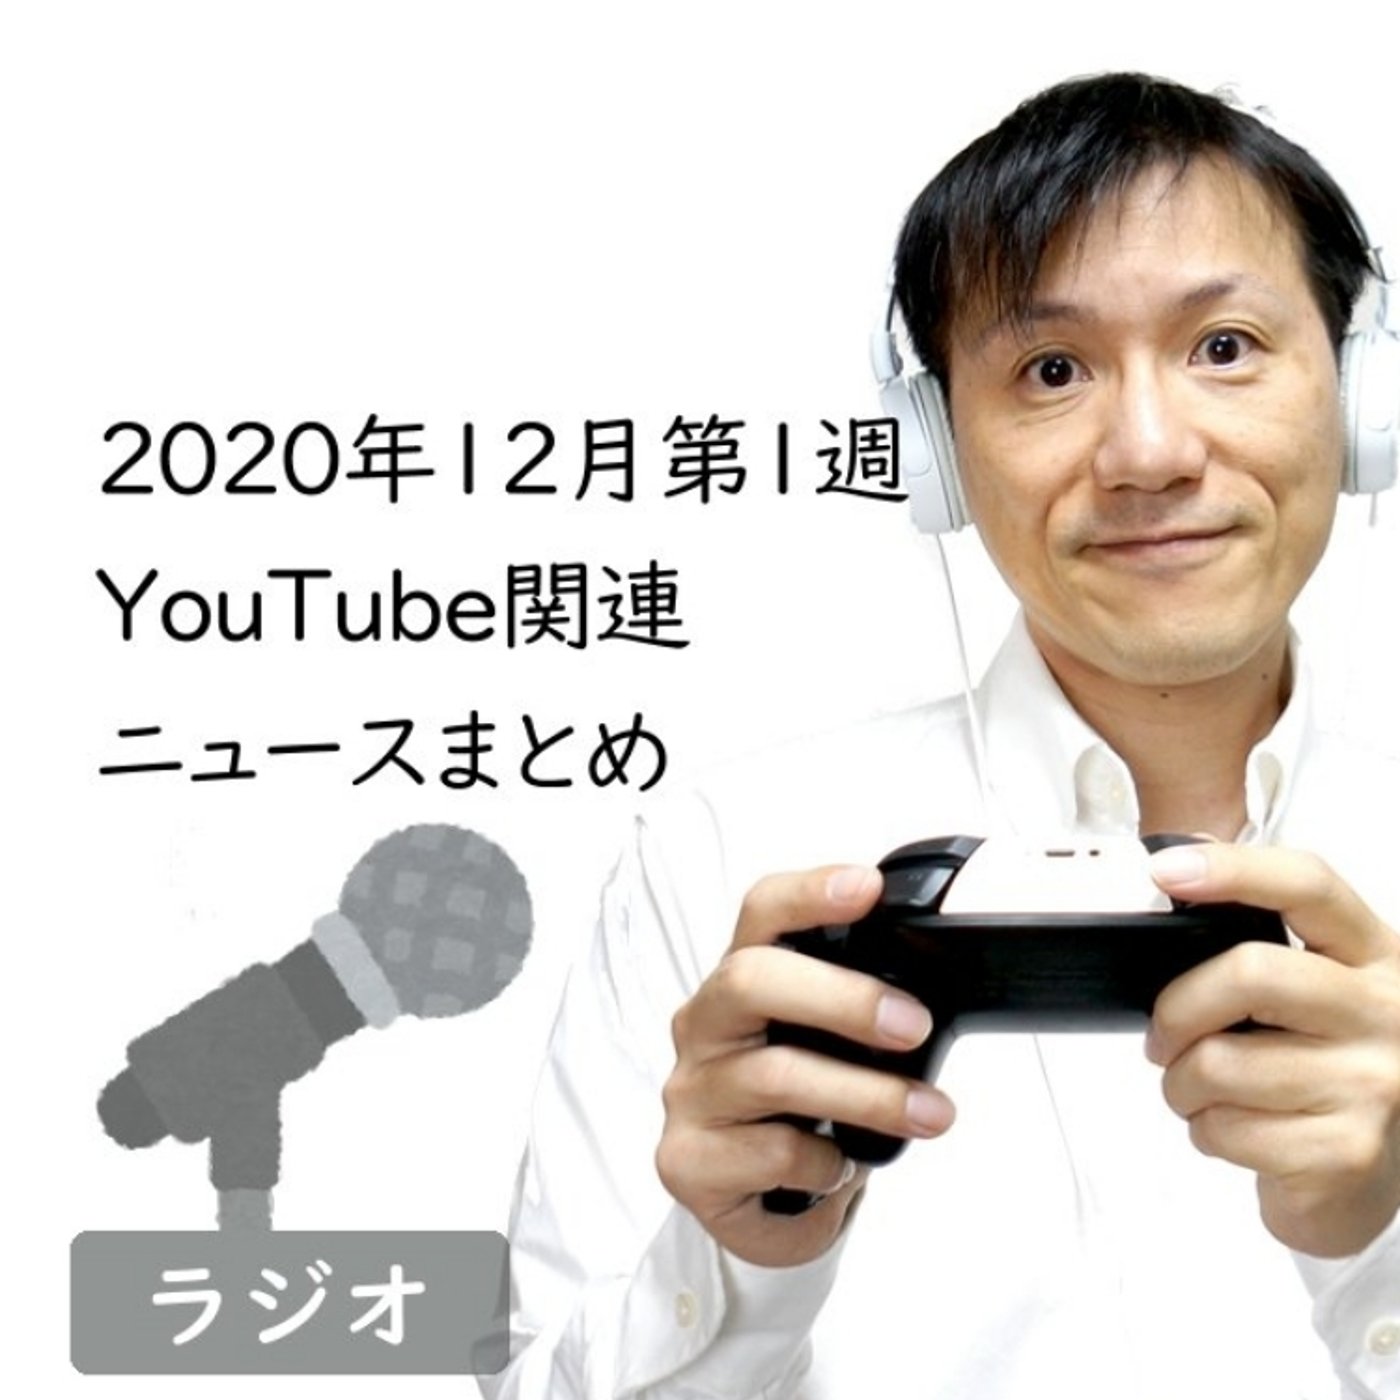 【#269】2020年12月第1週YouTube関連ニュースまとめ～YouTub